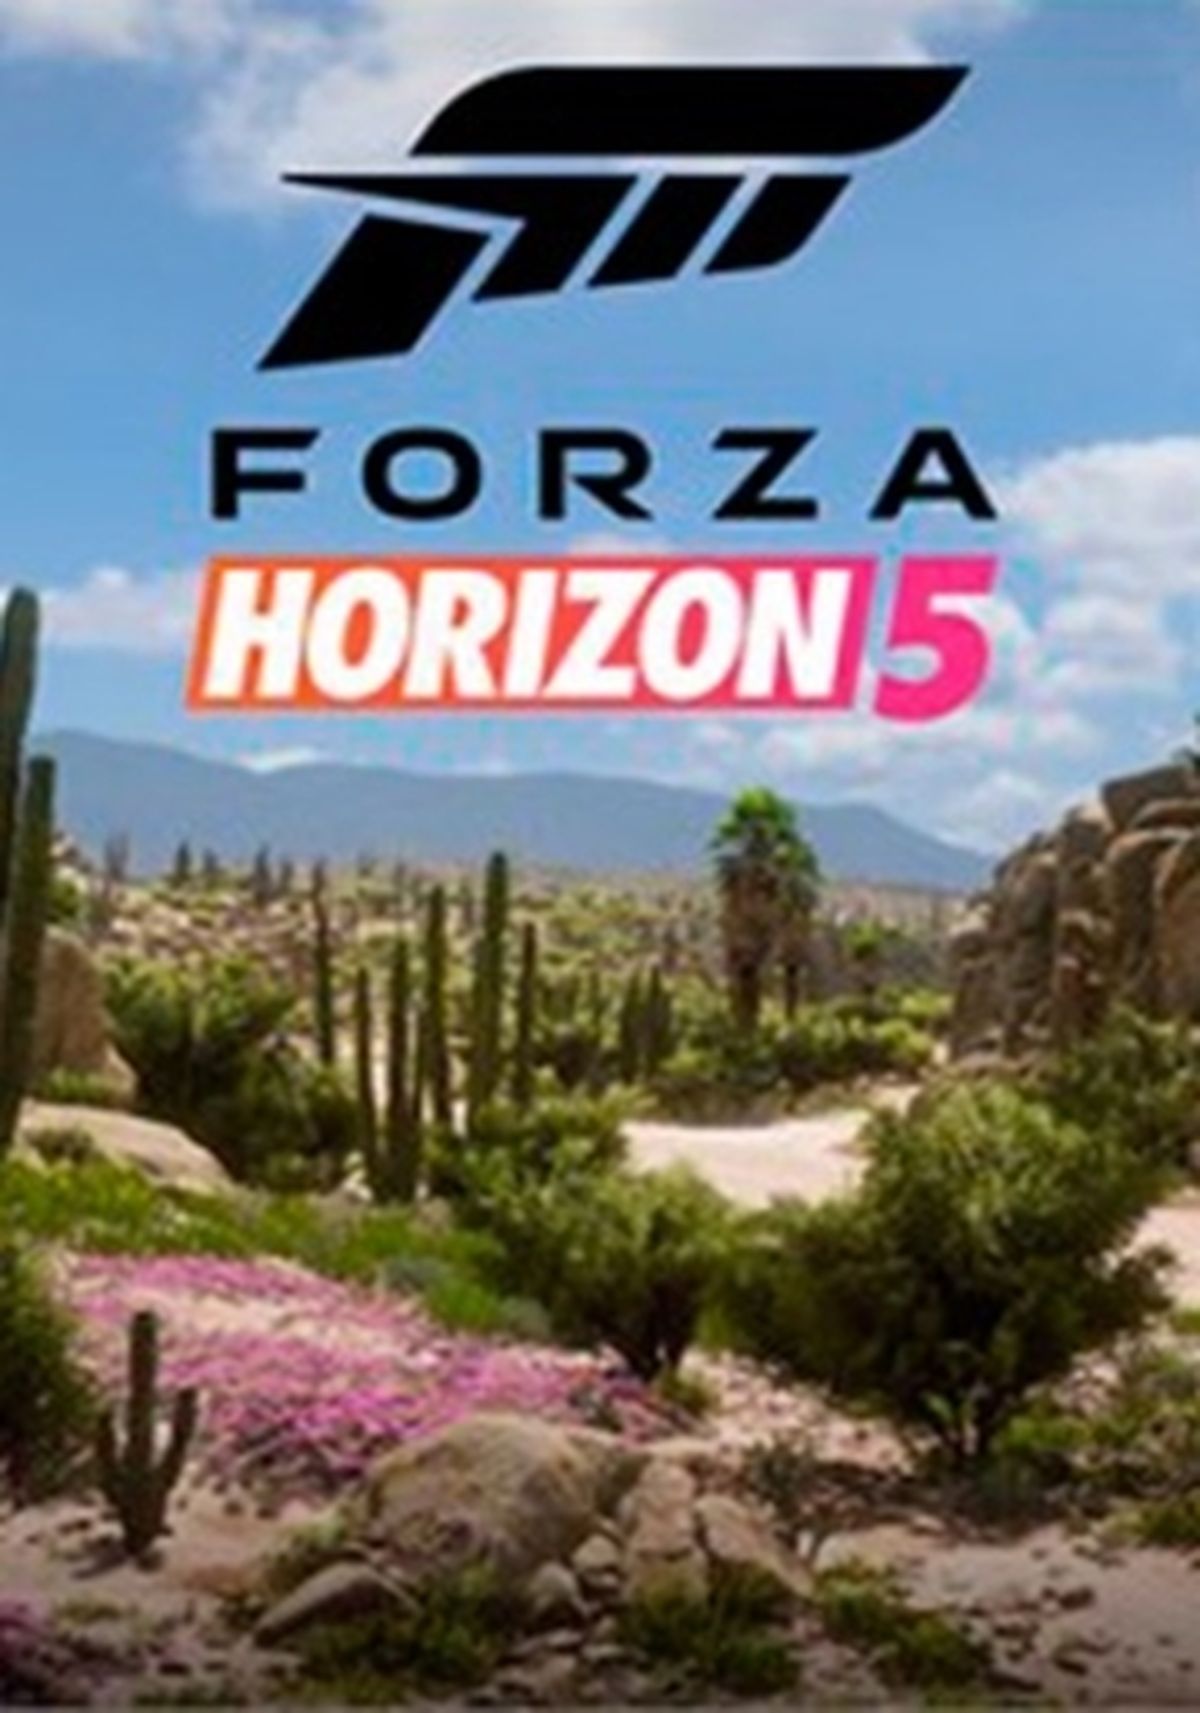 Los requisitos mínimos de Forza Horizon 4 son menores que los de Forza  Horizon 3